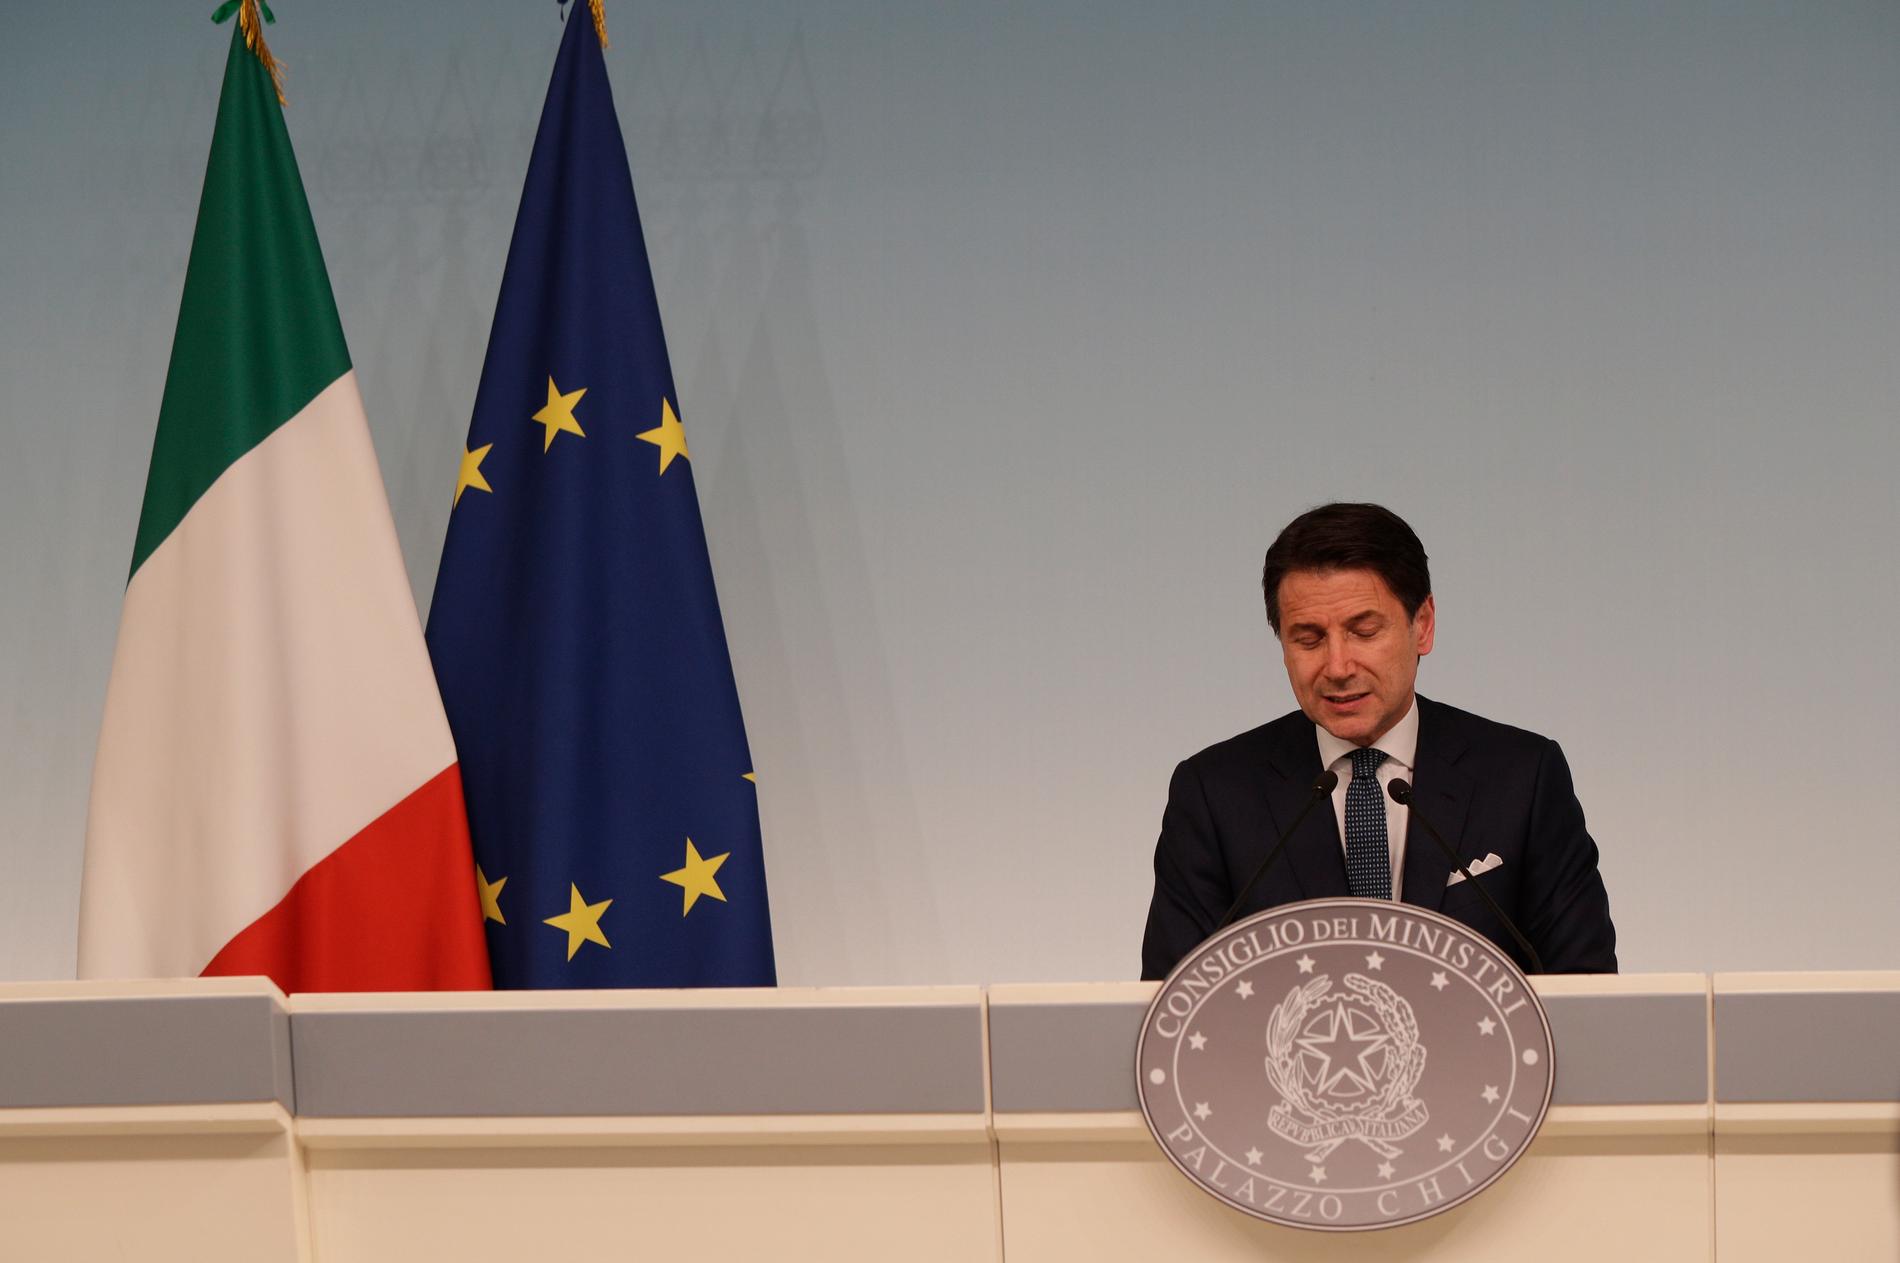 Italiens premiärminister Giuseppe Conte, en av spelarna när makten om Italien, Europas tredje största ekonomi, ska avgöras.